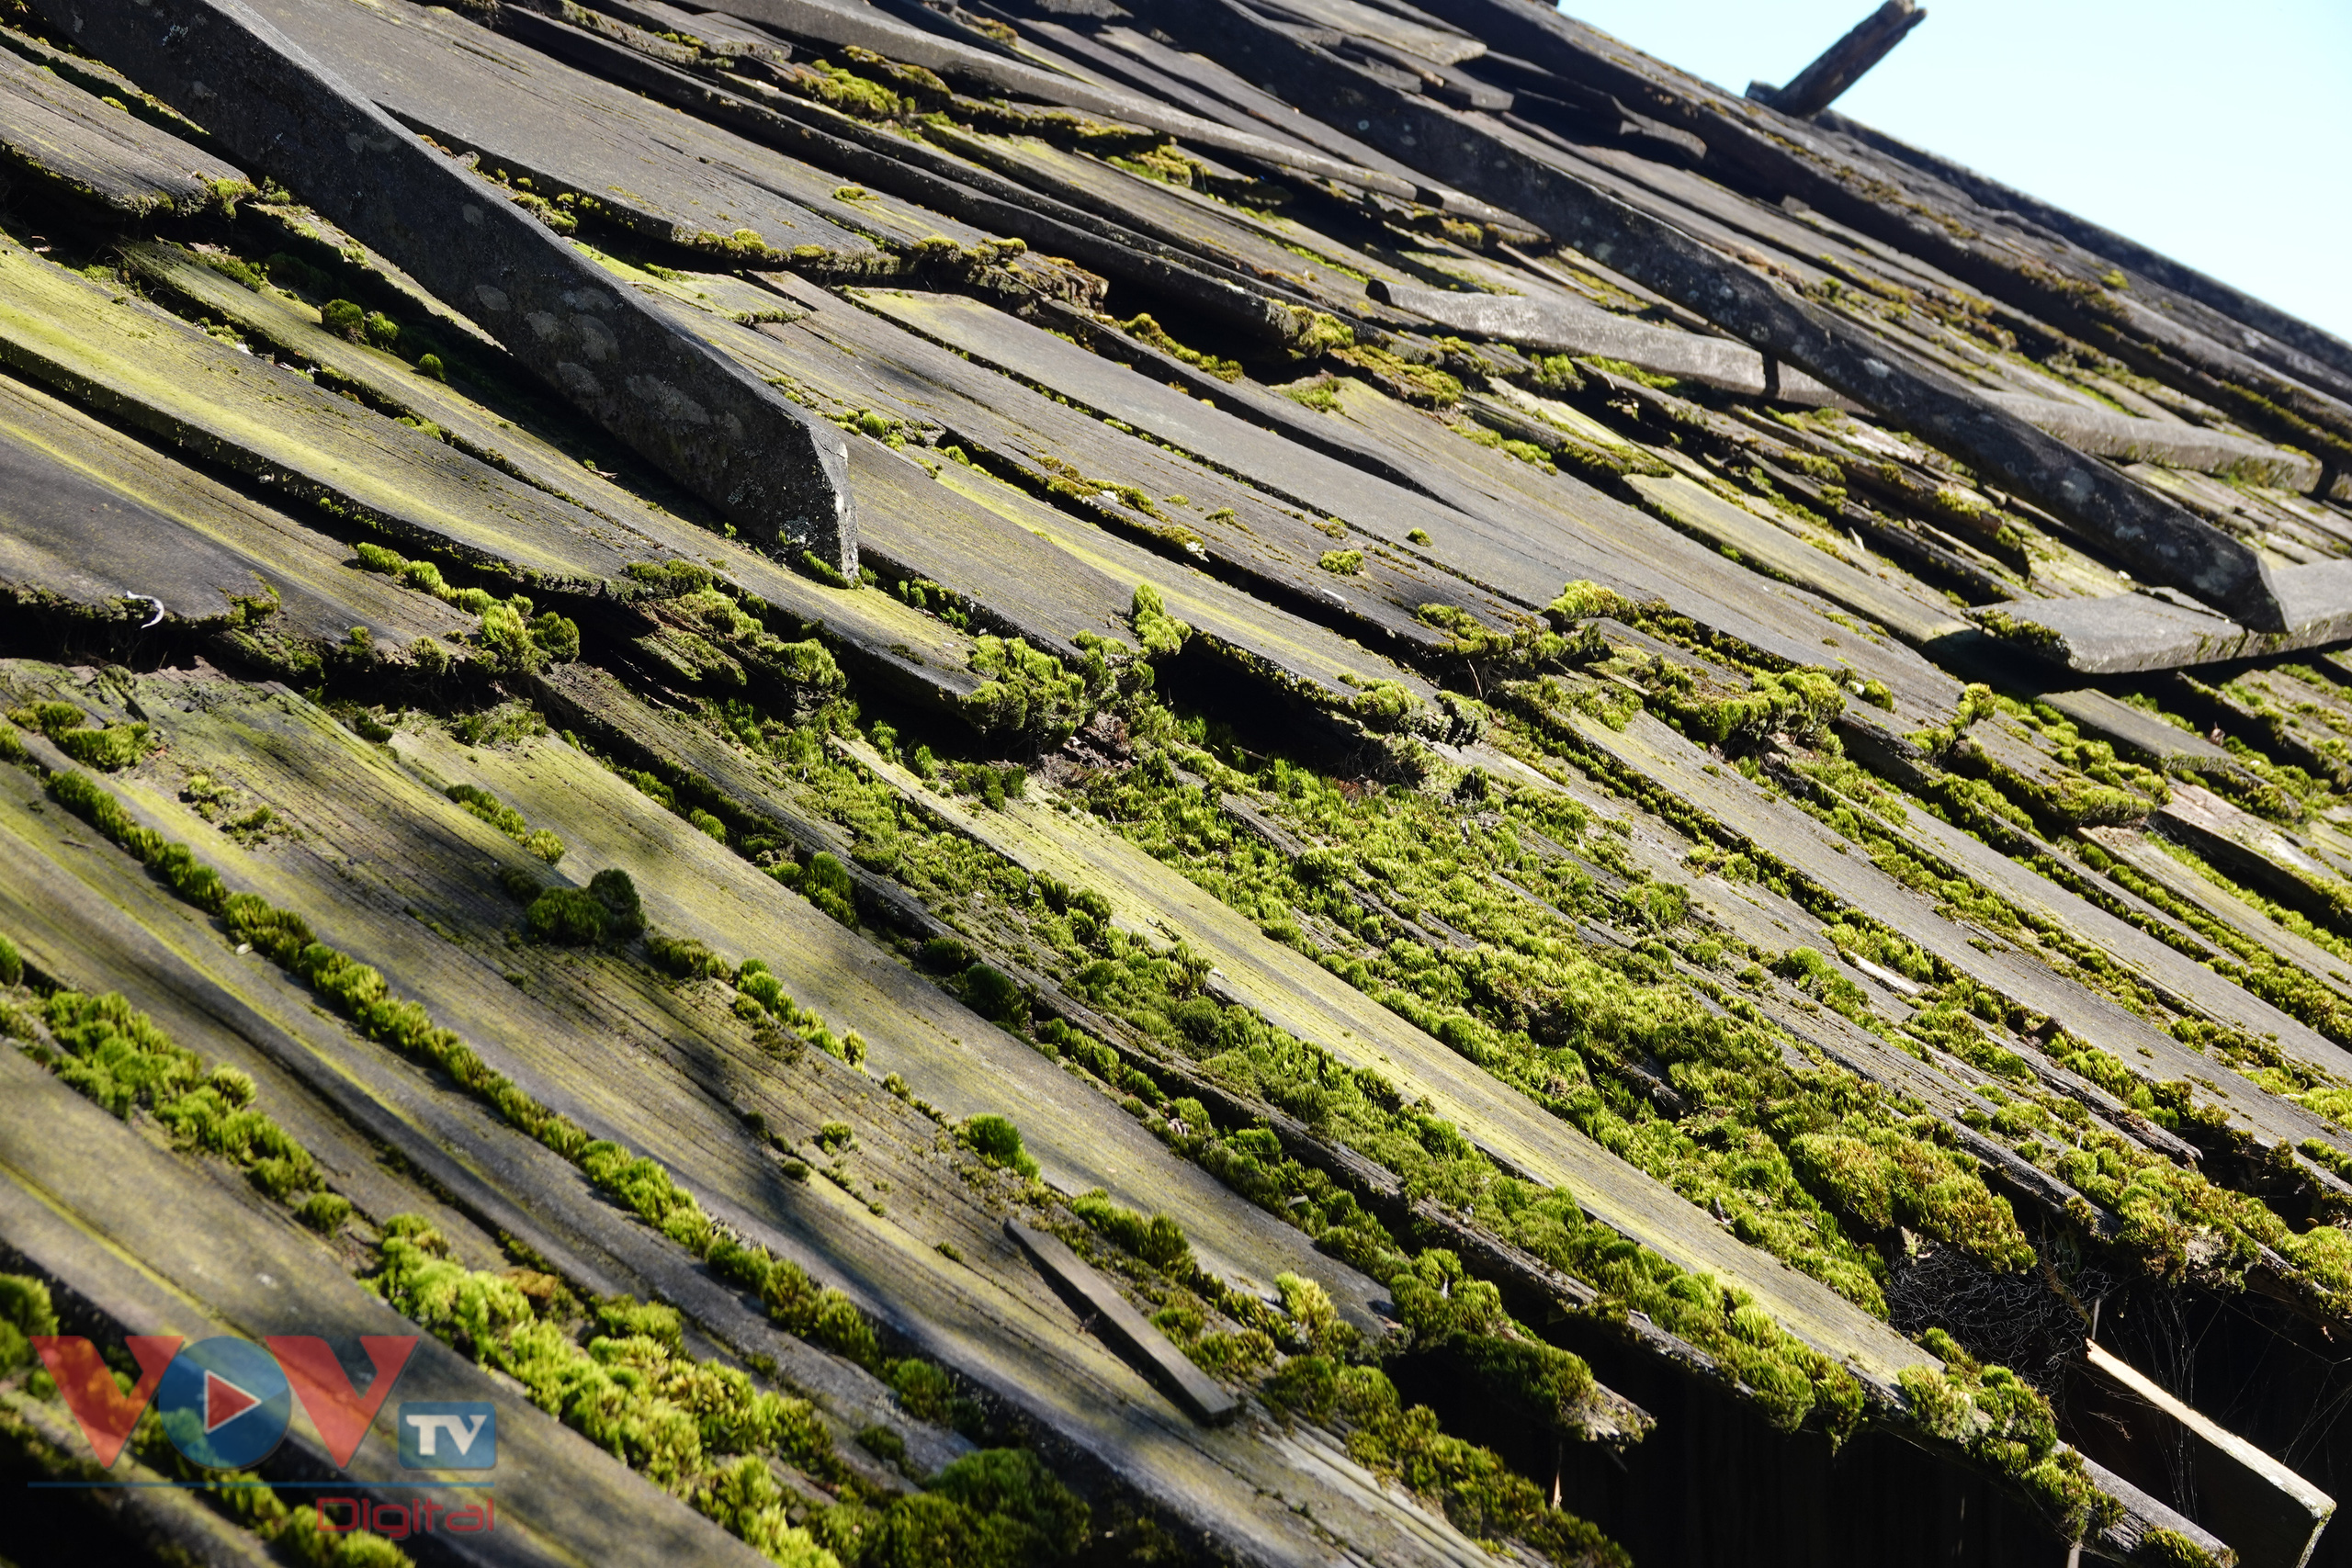 Ngay cả những mái nhà lợp gỗ thông cũng rất nên thơ với những lớp rêu xanh rì